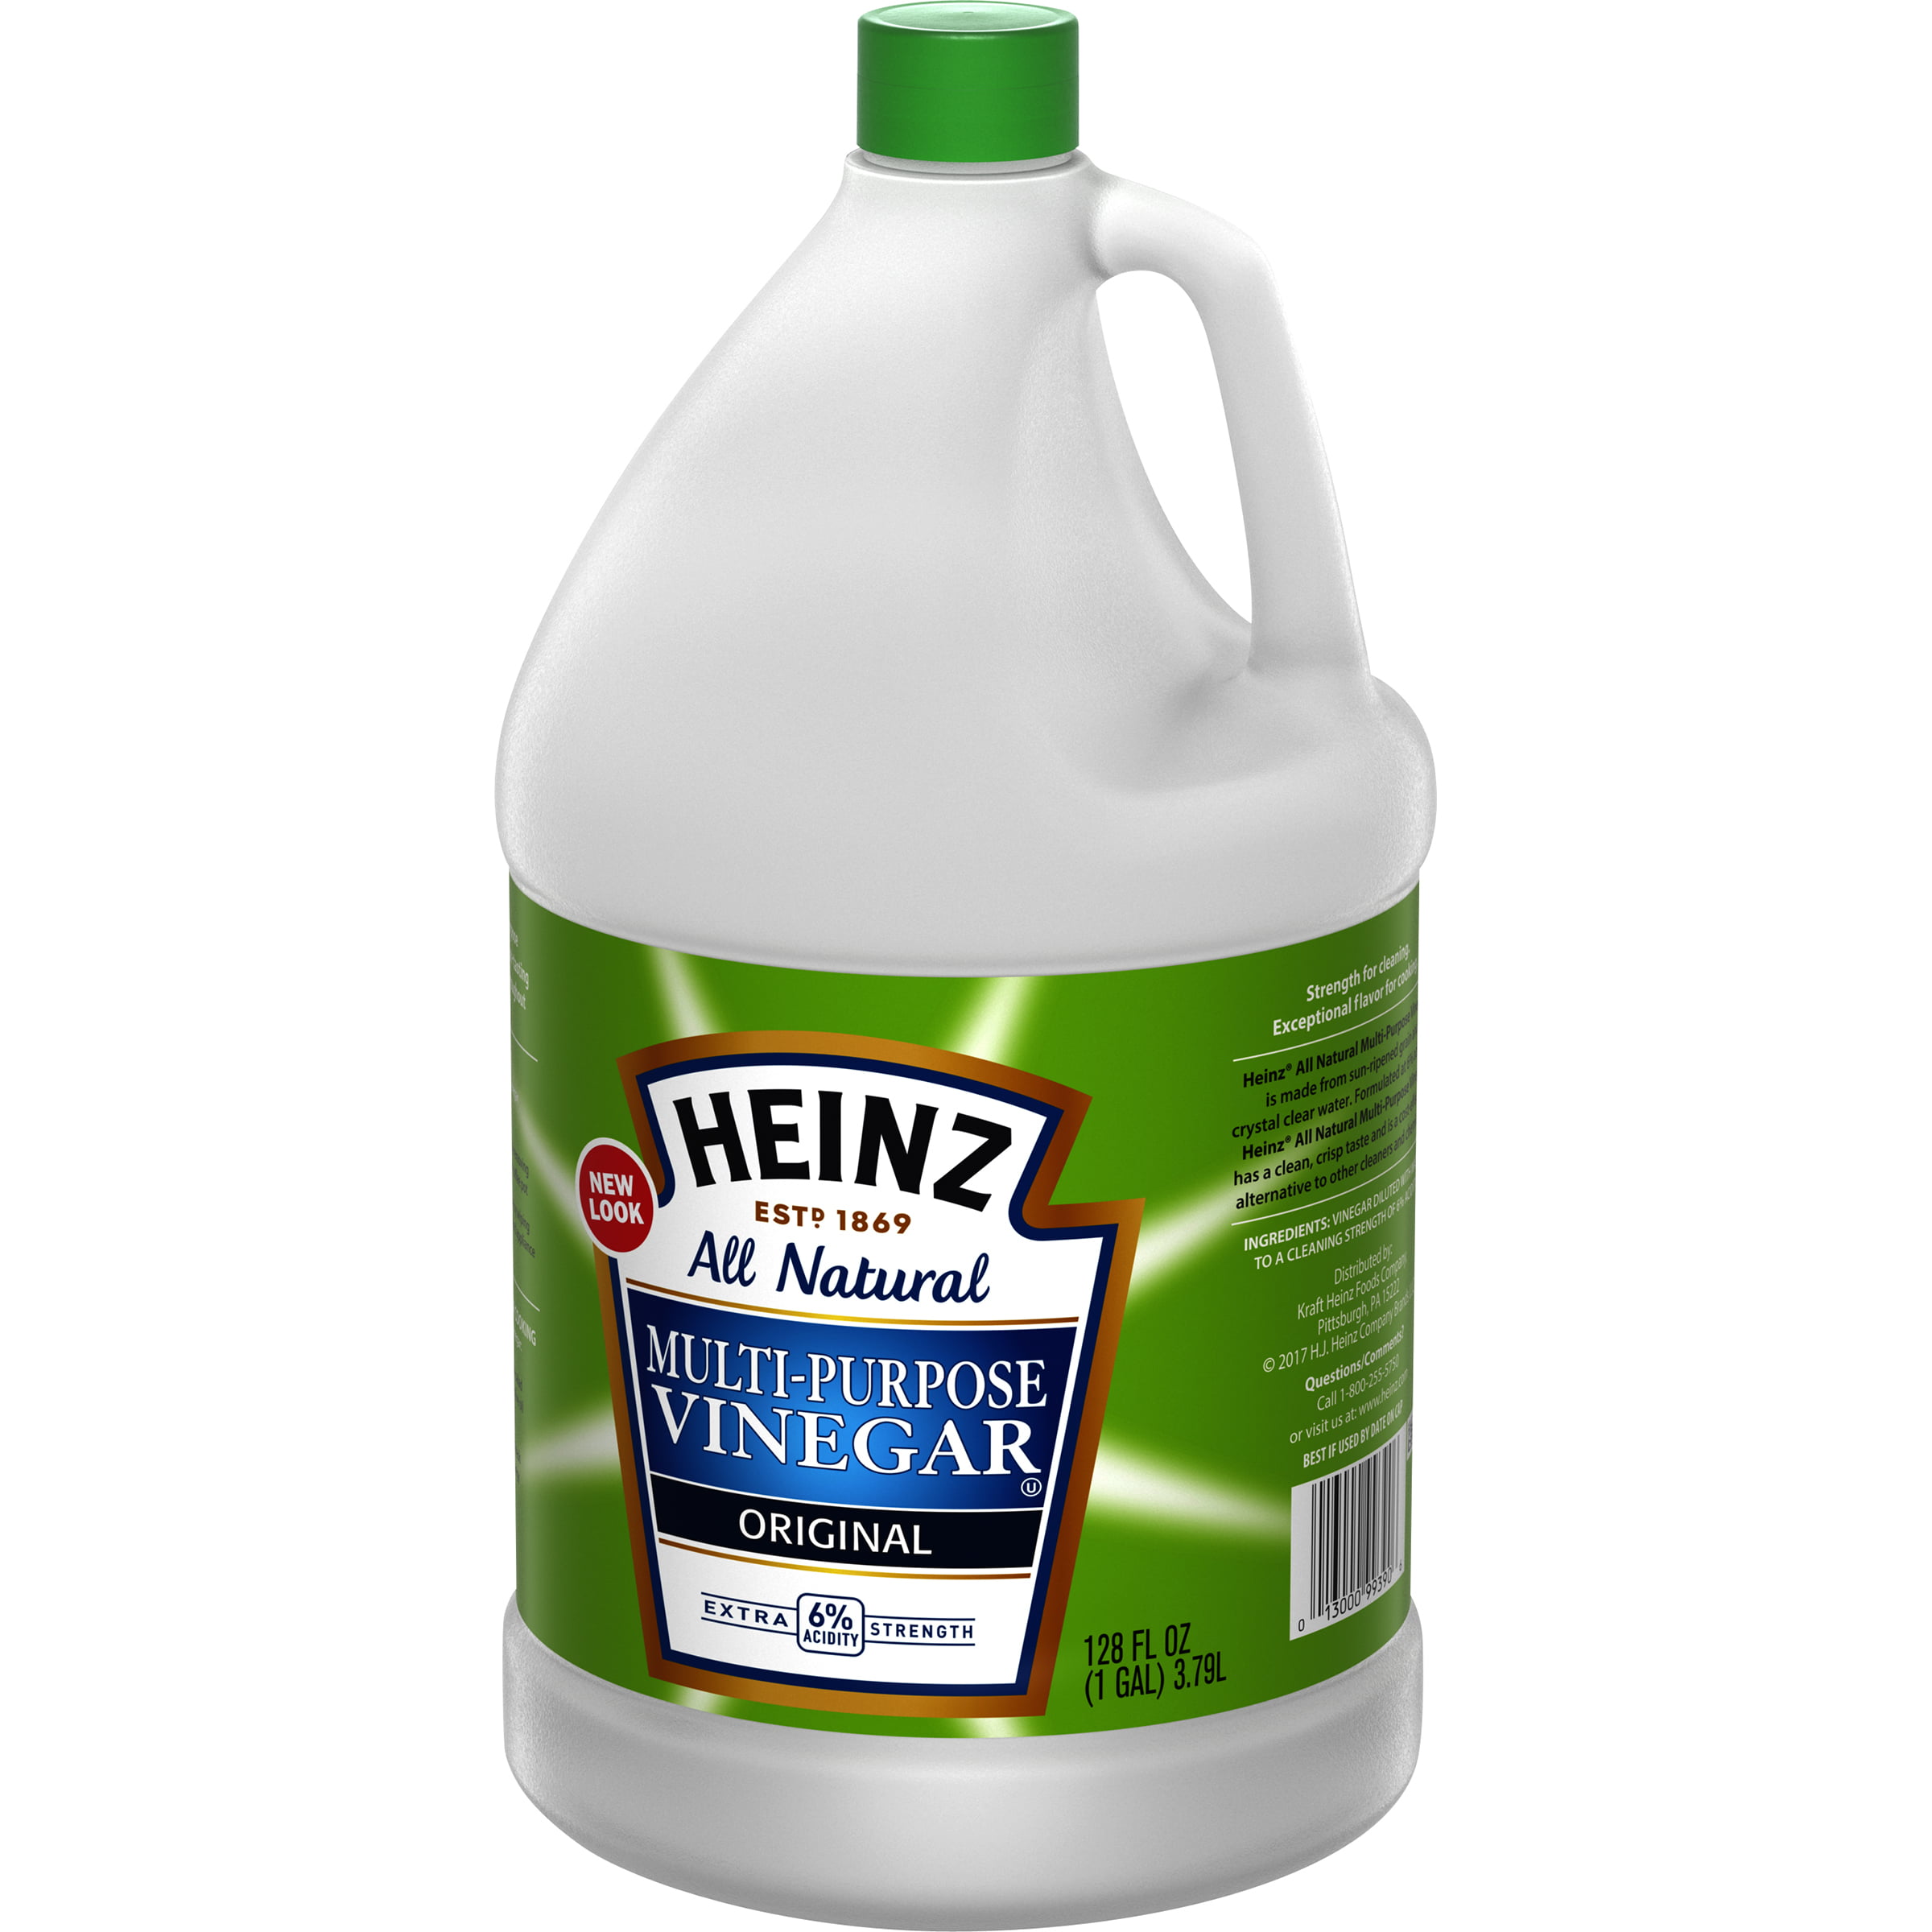 Heinz Cleaning Vinegar 6 - 1 gal Jugs